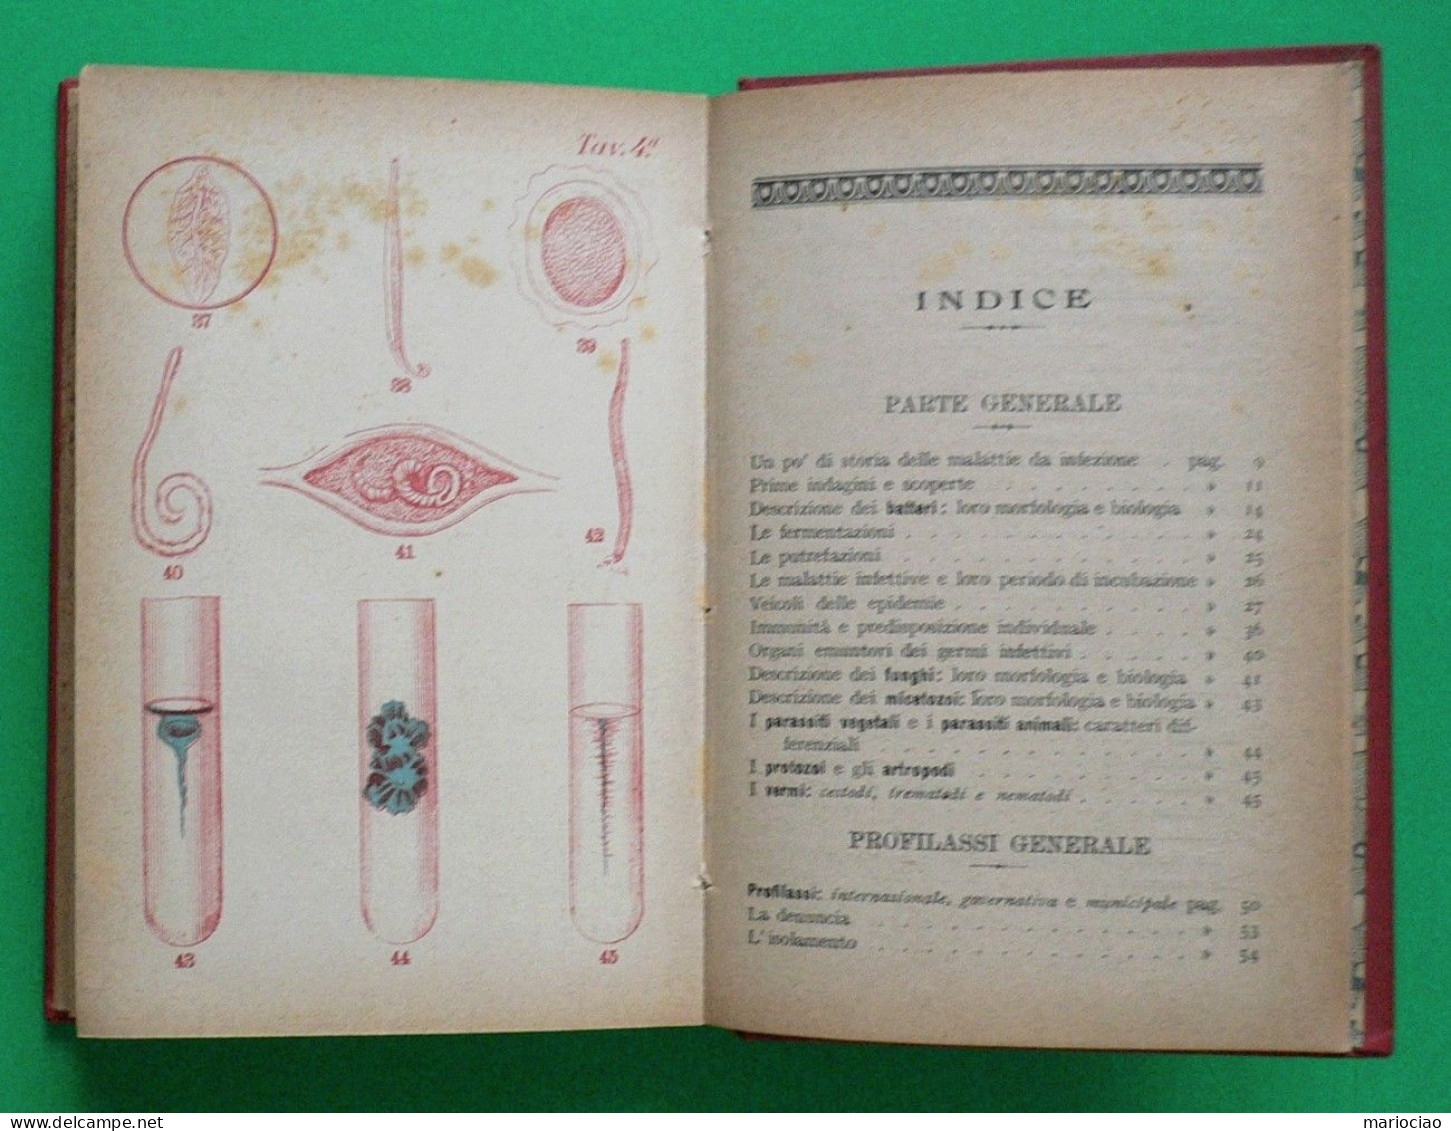 L-IT MEDICINA La Difesa Personale Dalle Malattie Infettivo - Parassitarie 1906 - Alte Bücher